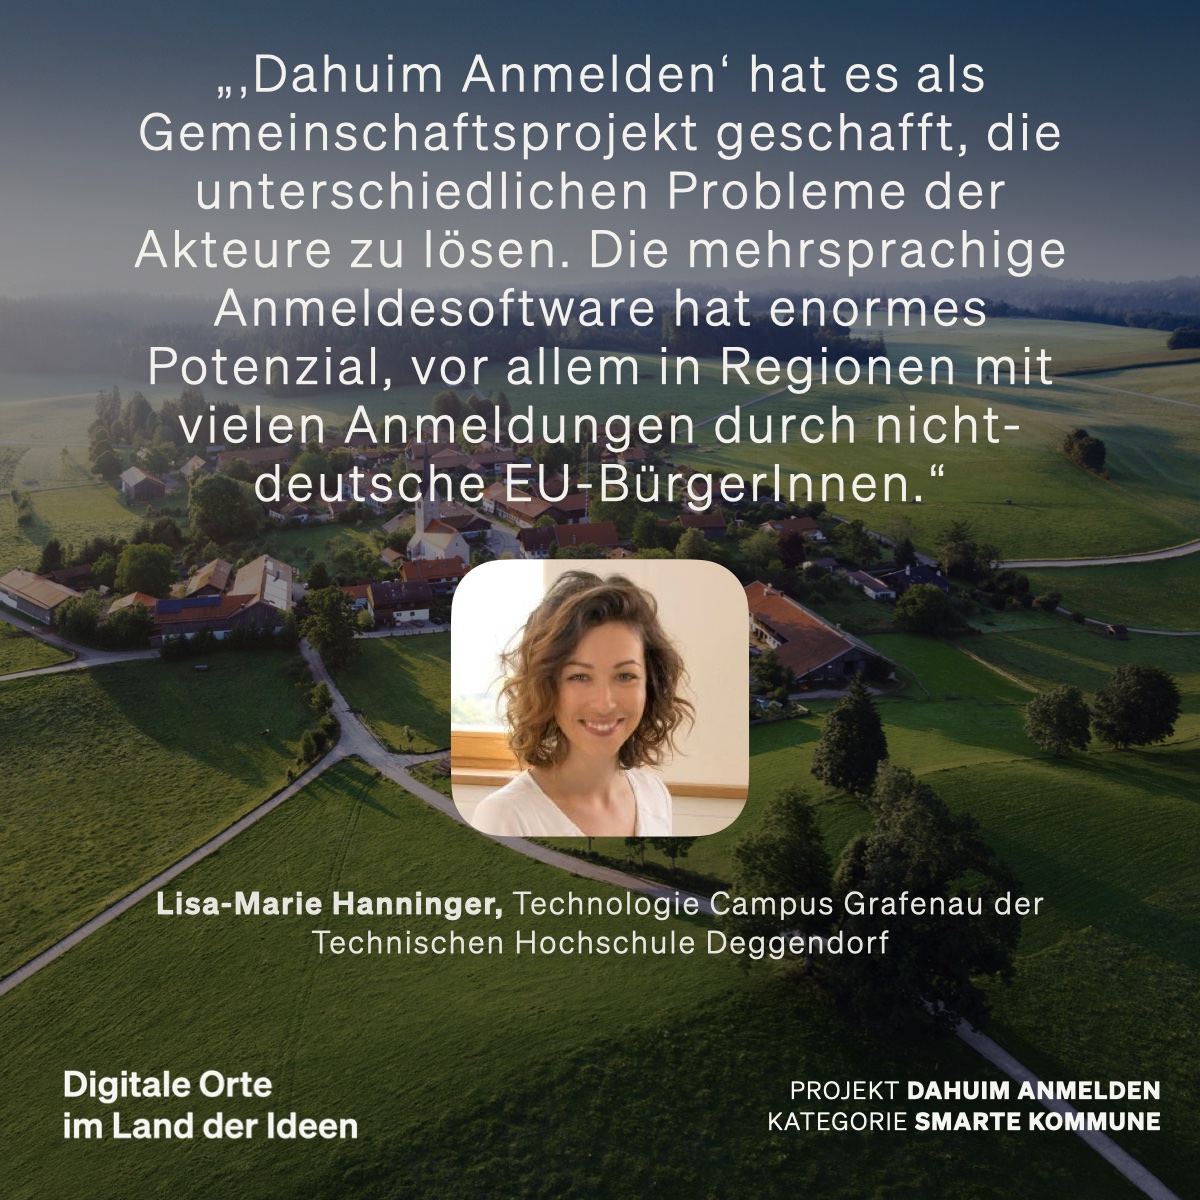 Das Projekt 'Dahuim Anmelden' erleichtert Behördengänge im ländlichen Raum – und ist Finalist in der Kategorie 'Smarte Kommune' beim #DigitaleOrte2023-Wettbewerb 👉 land-der-ideen.de/wettbewerbe/di… @DtGlasfaser @hiig_berlin @CZ_Stiftung @DLTonline @DanielaKluckert @bmdv @TH_Deggendorf